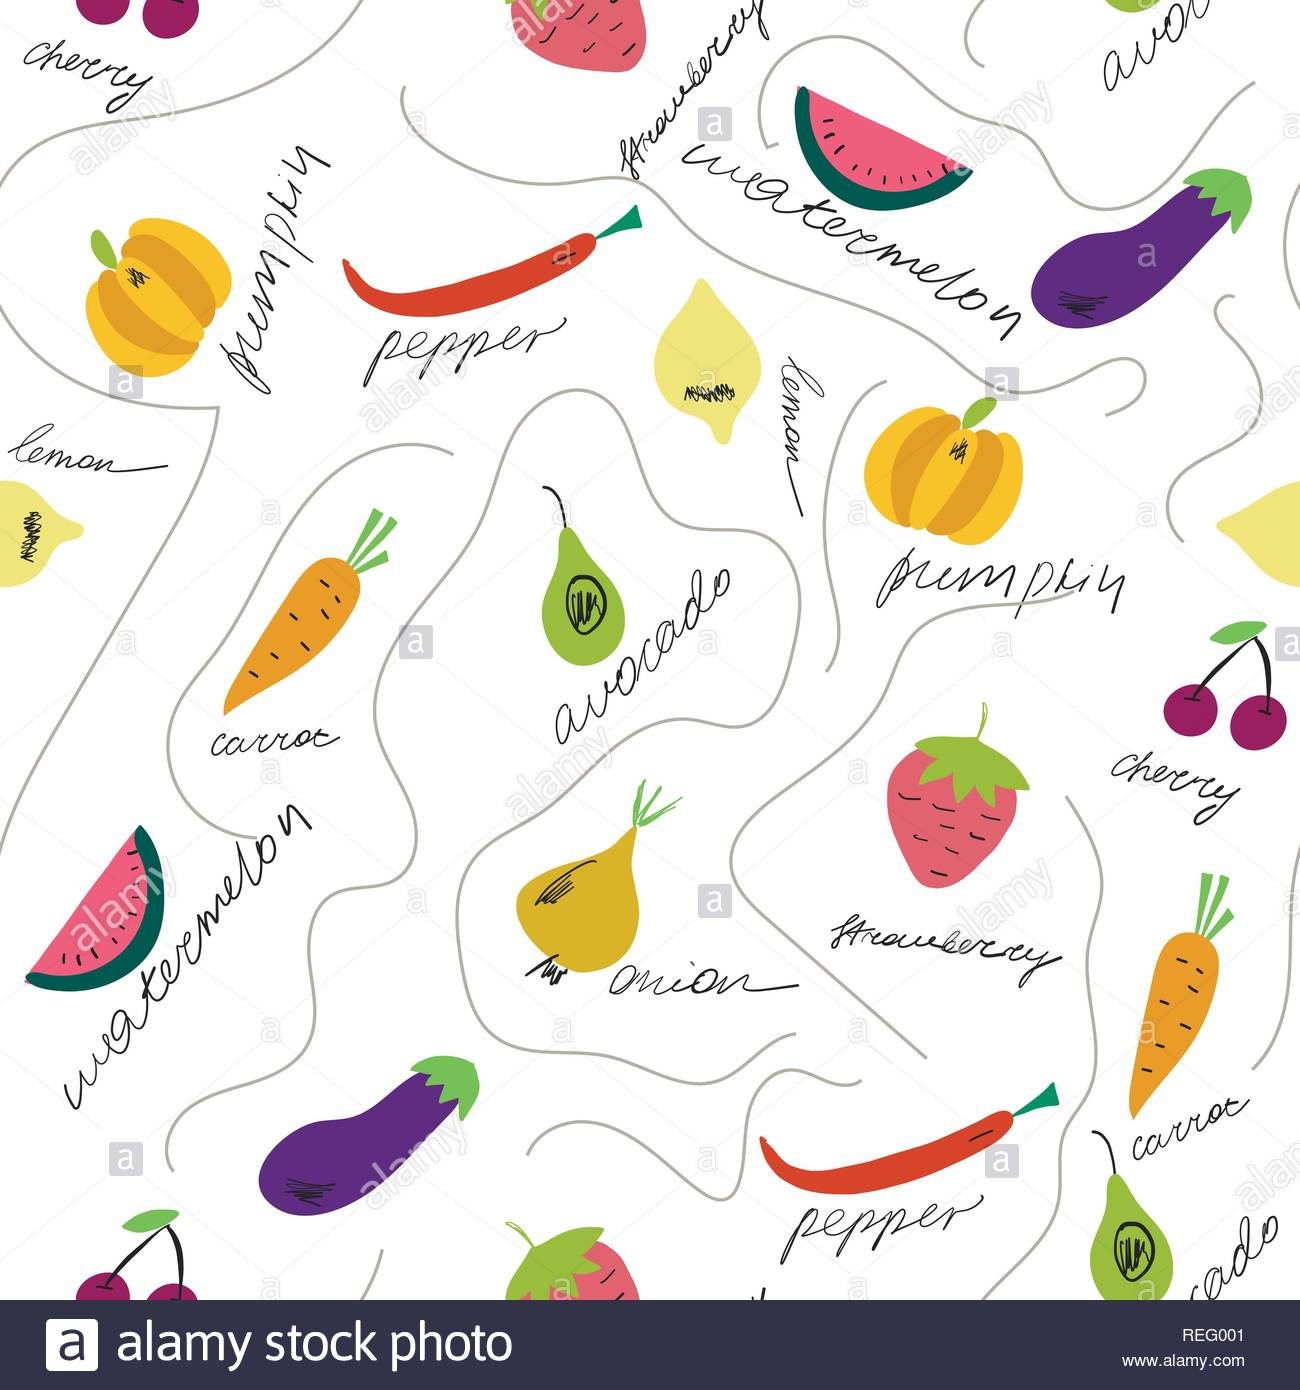 Cute Fruits Et Légumes Avec Leurs Noms De Modèle Uniforme concernant Nom De Legume 